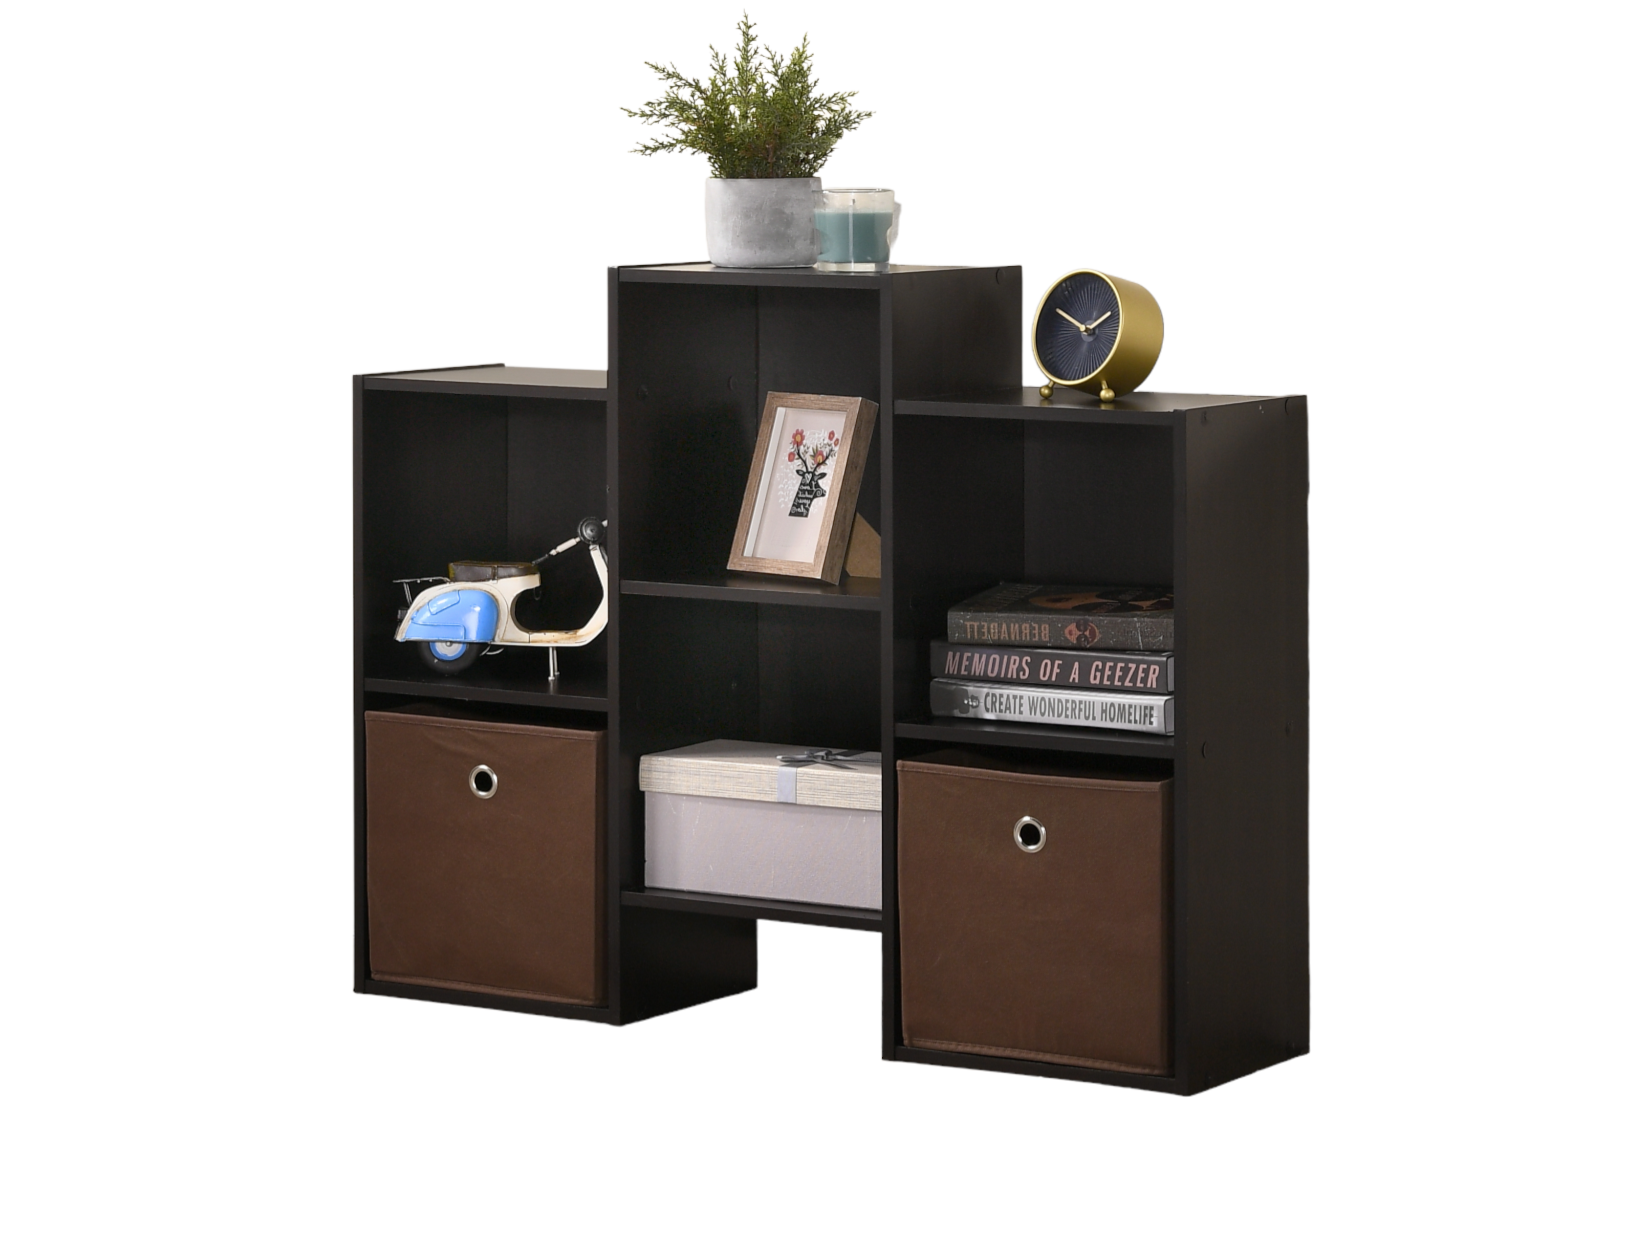 фото Стеллаж деревянный gastrorag gr-6tss1-es,открытый книжный шкаф,комод,цвет темно-коричневый